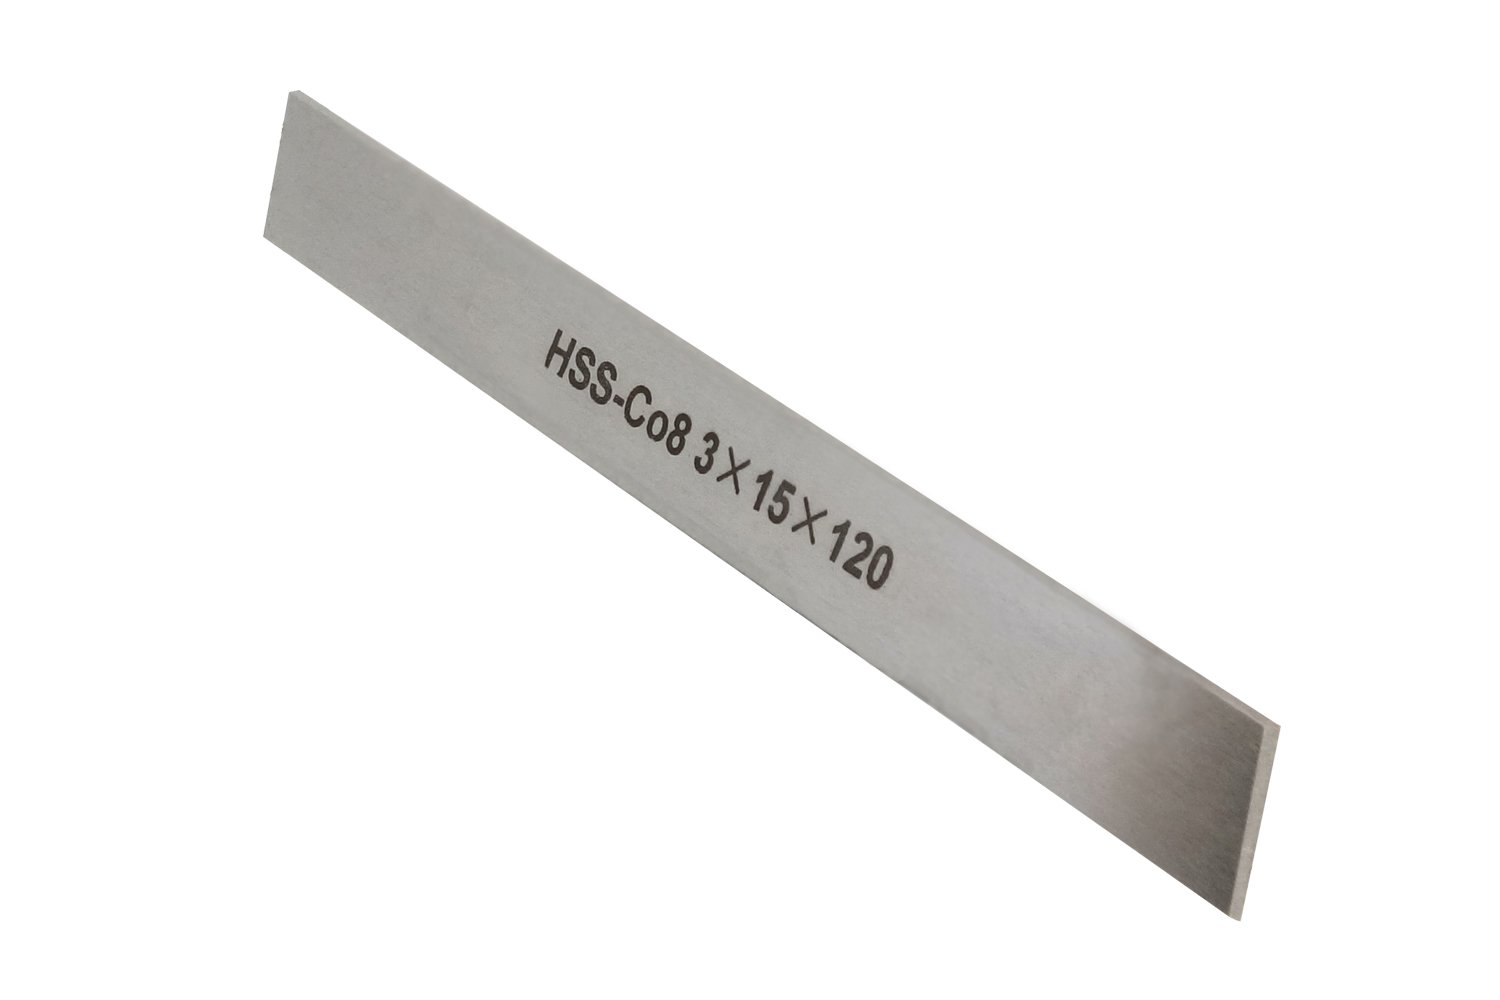 HSS-Ersatzmesser 3 x 15 x 120 mm (8 % Kobalt) für Abstechstahlhalter